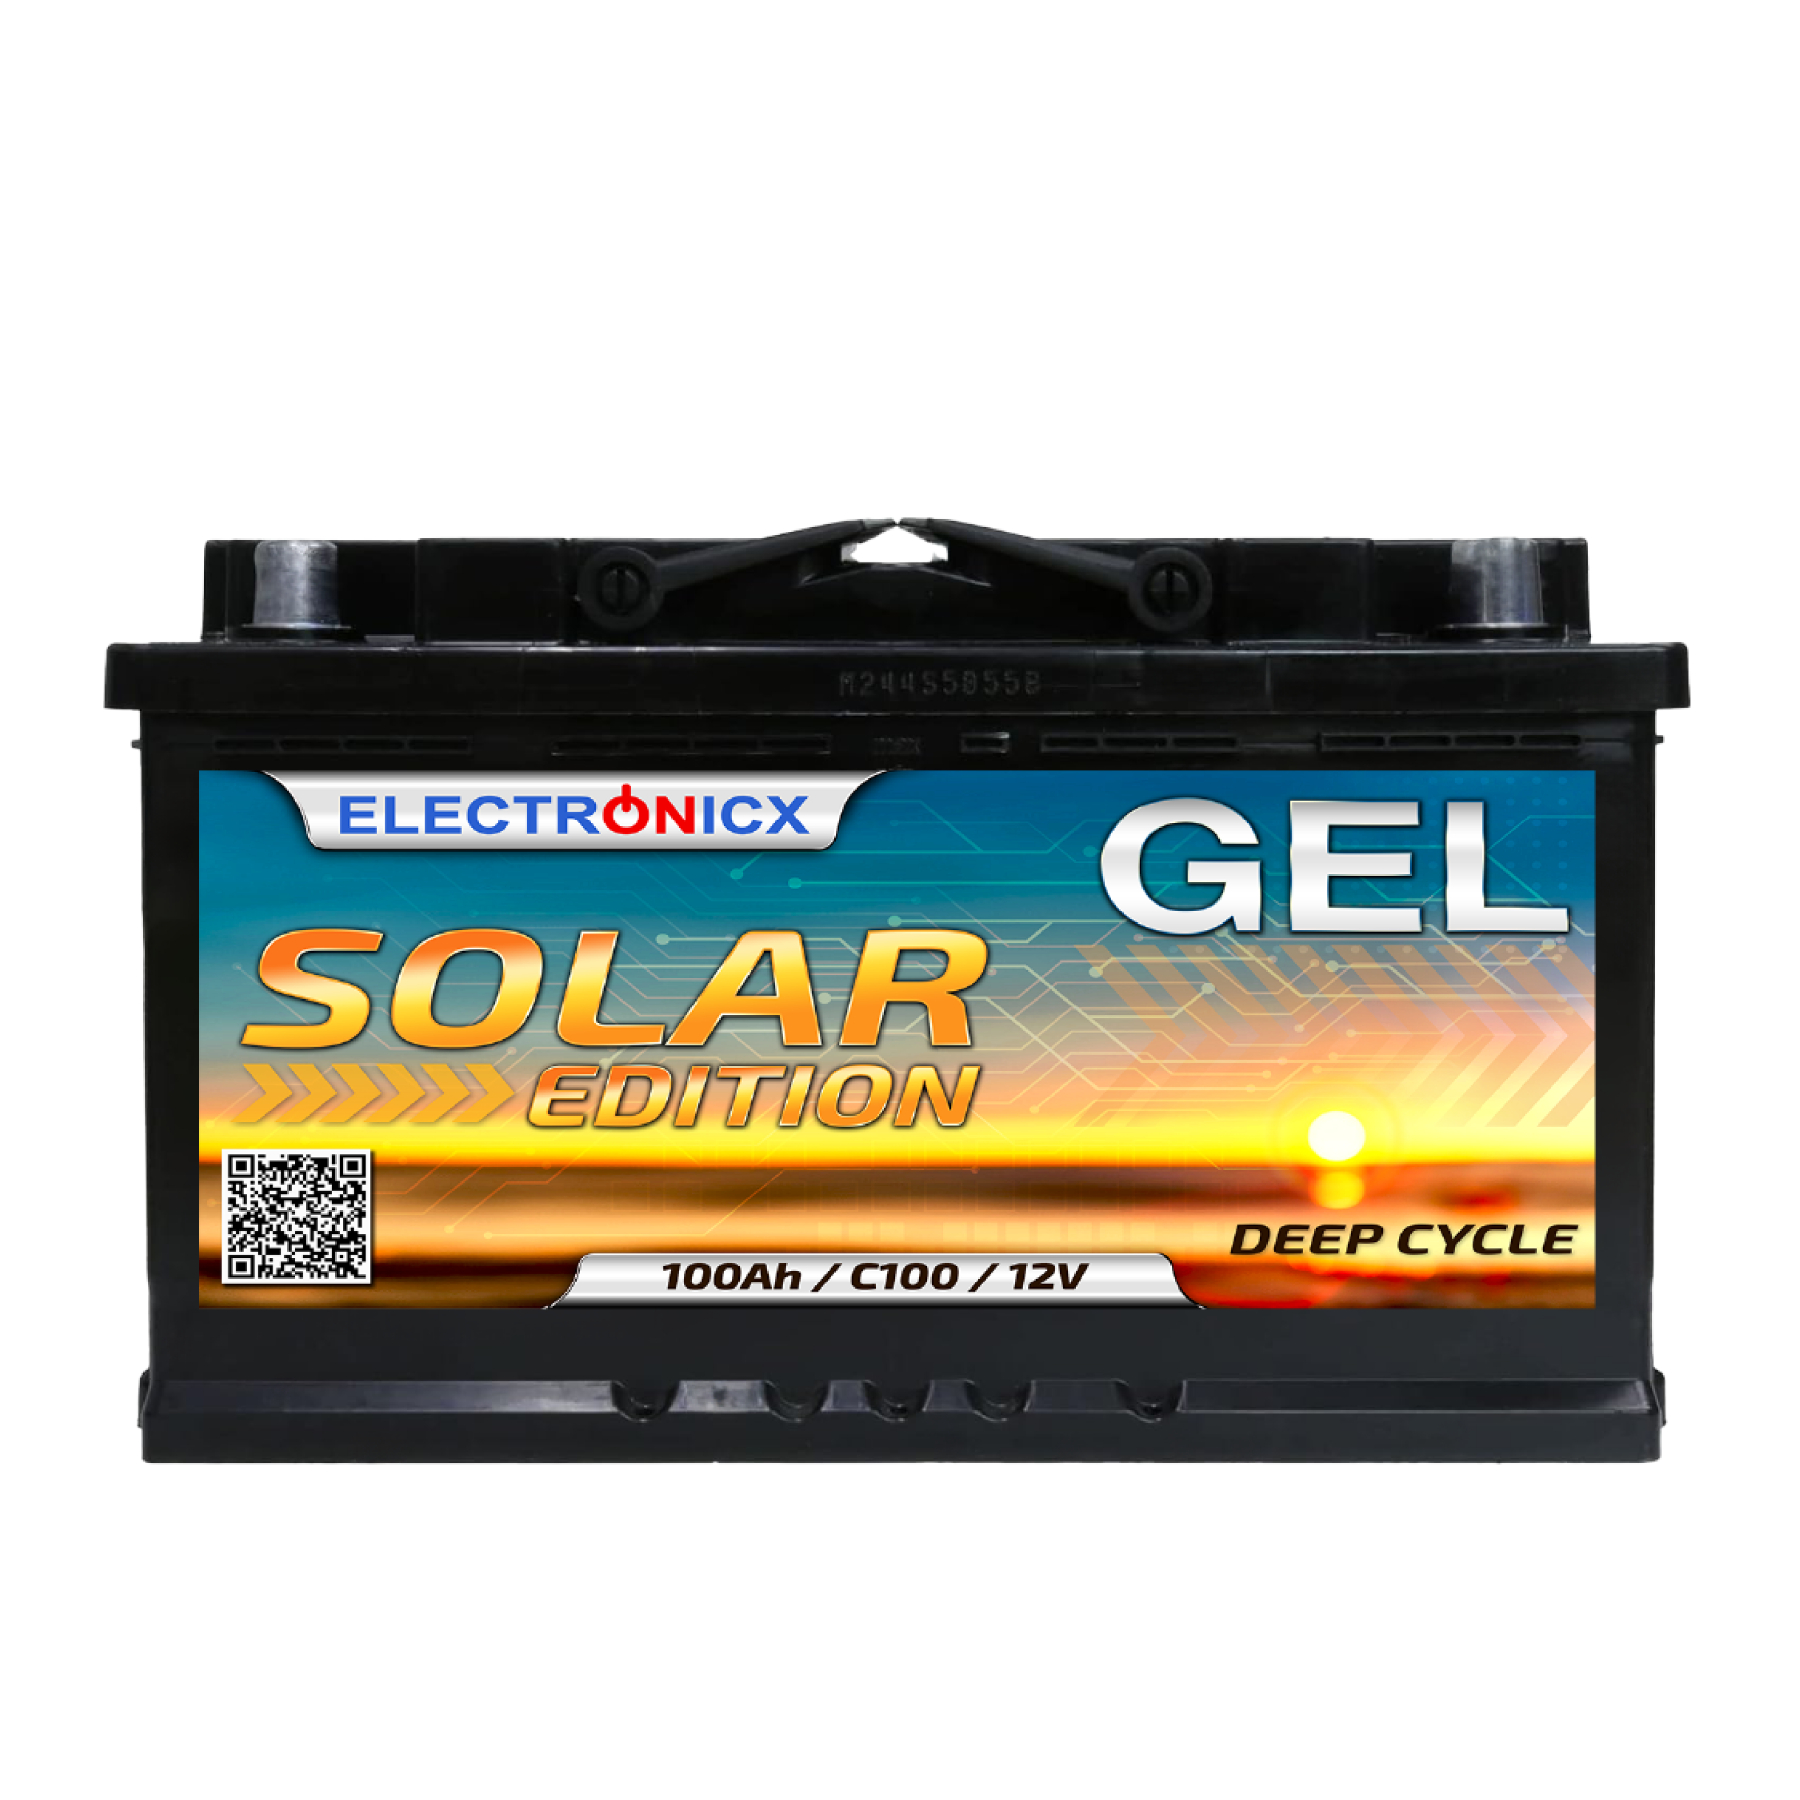 Batterie GEL Ultracell 12V 100Ah – Europeen Solar Store